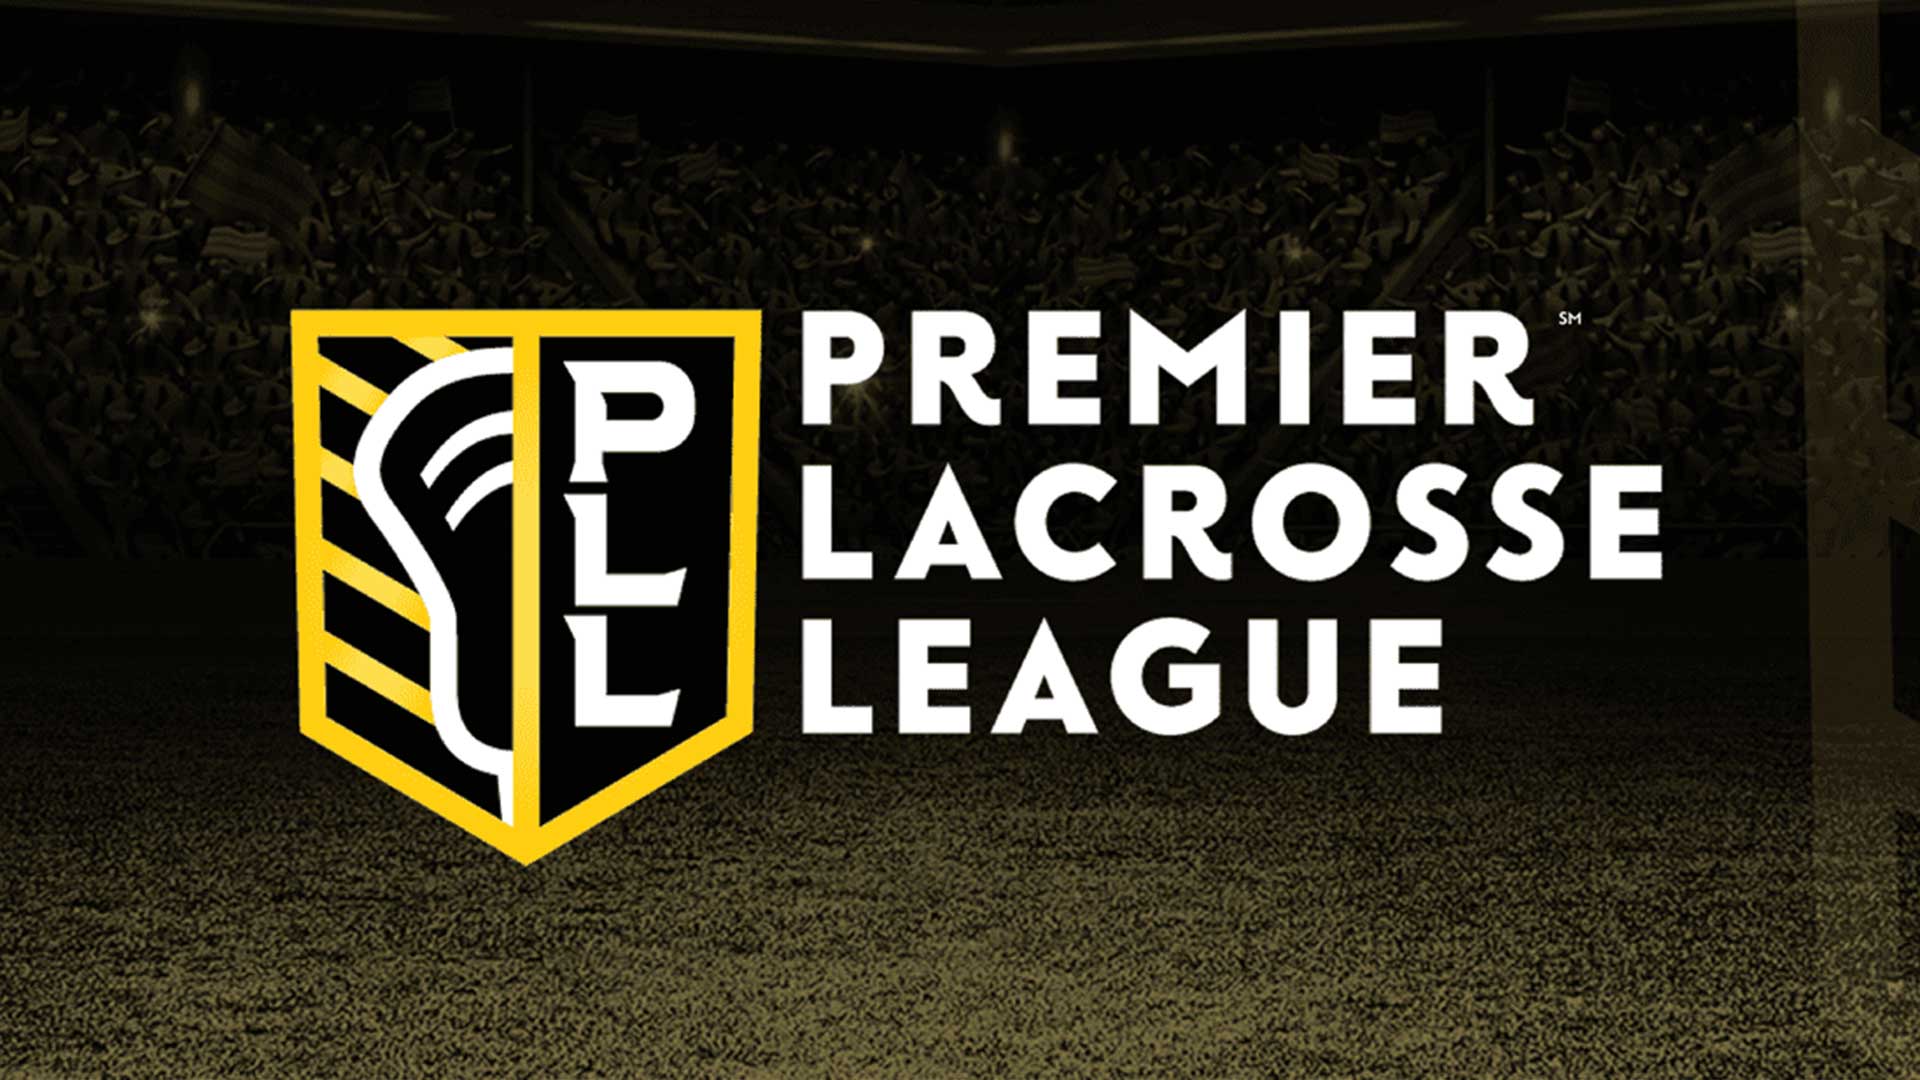 Premier Lacrosse League Announces 2023 All-Stars - Premier Lacrosse League